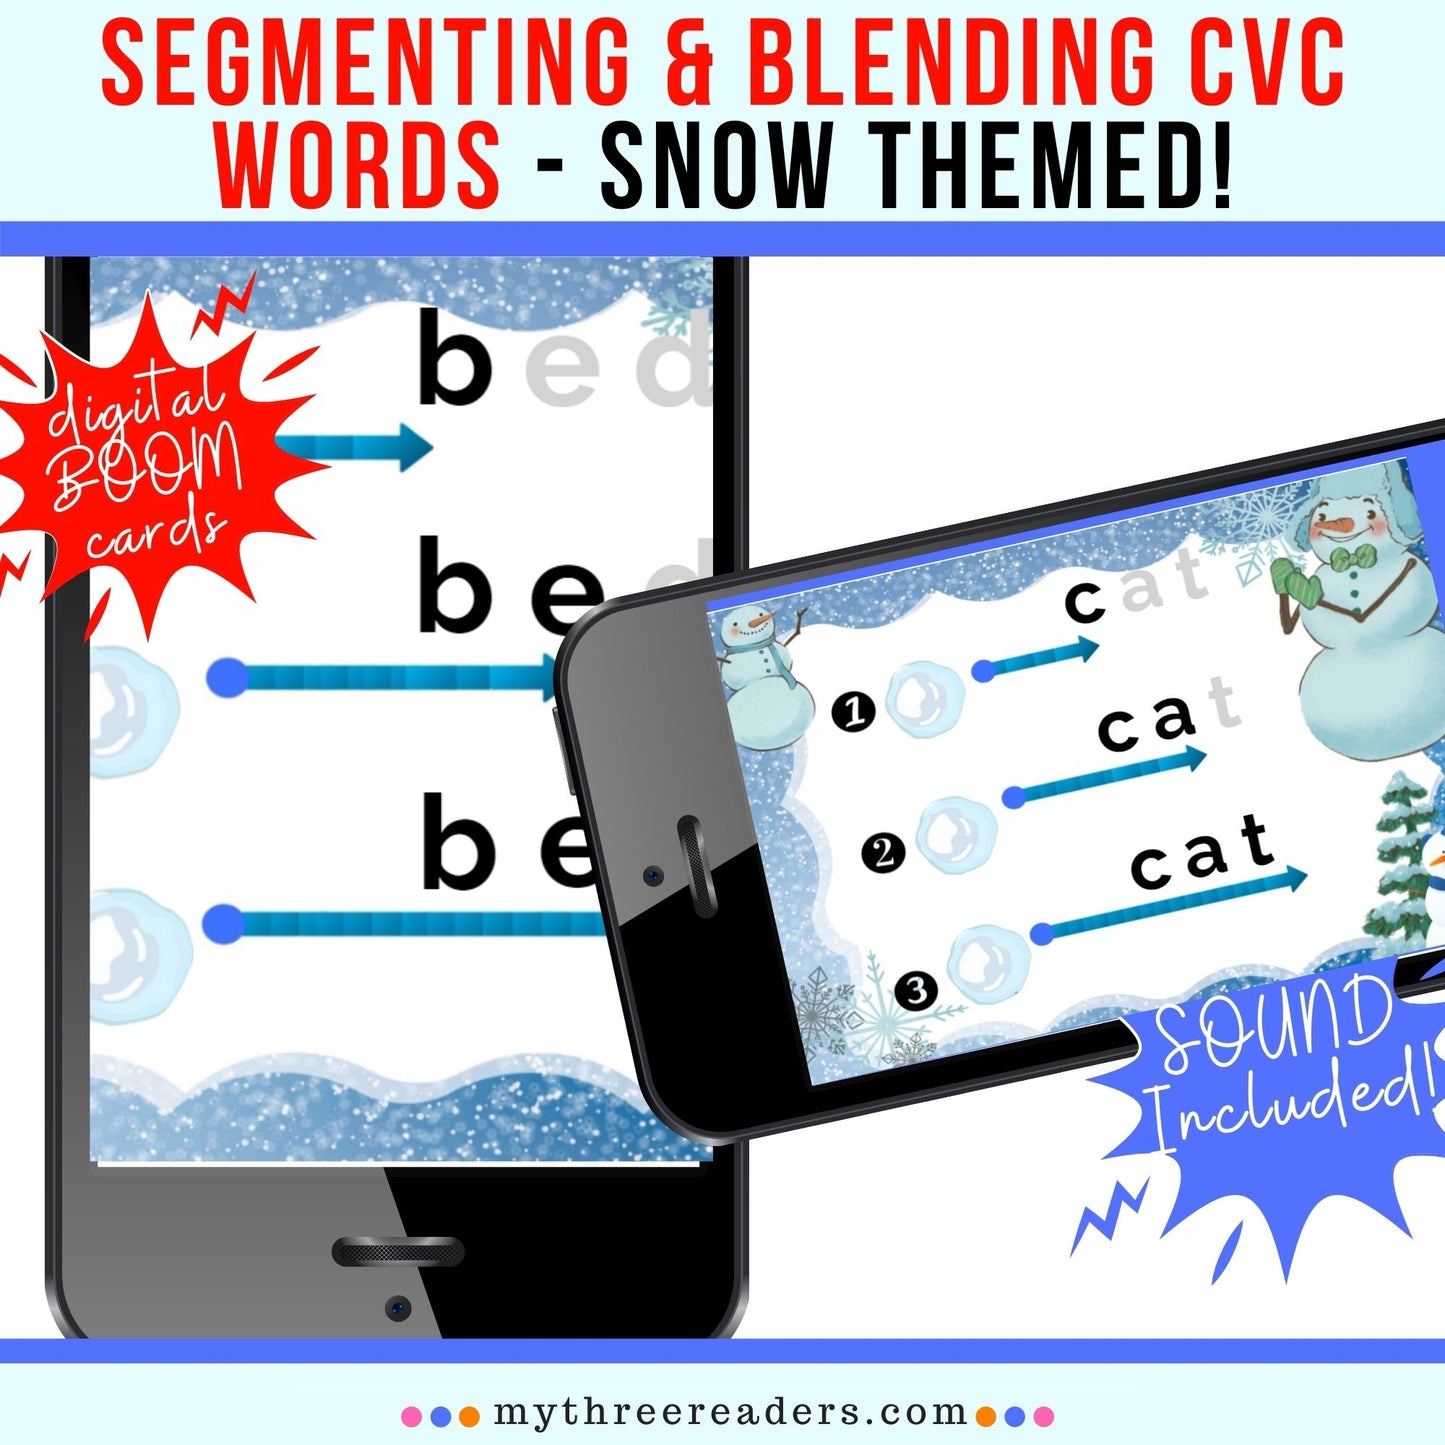 Segmenting & Blending CVC Words - Snow Themed!